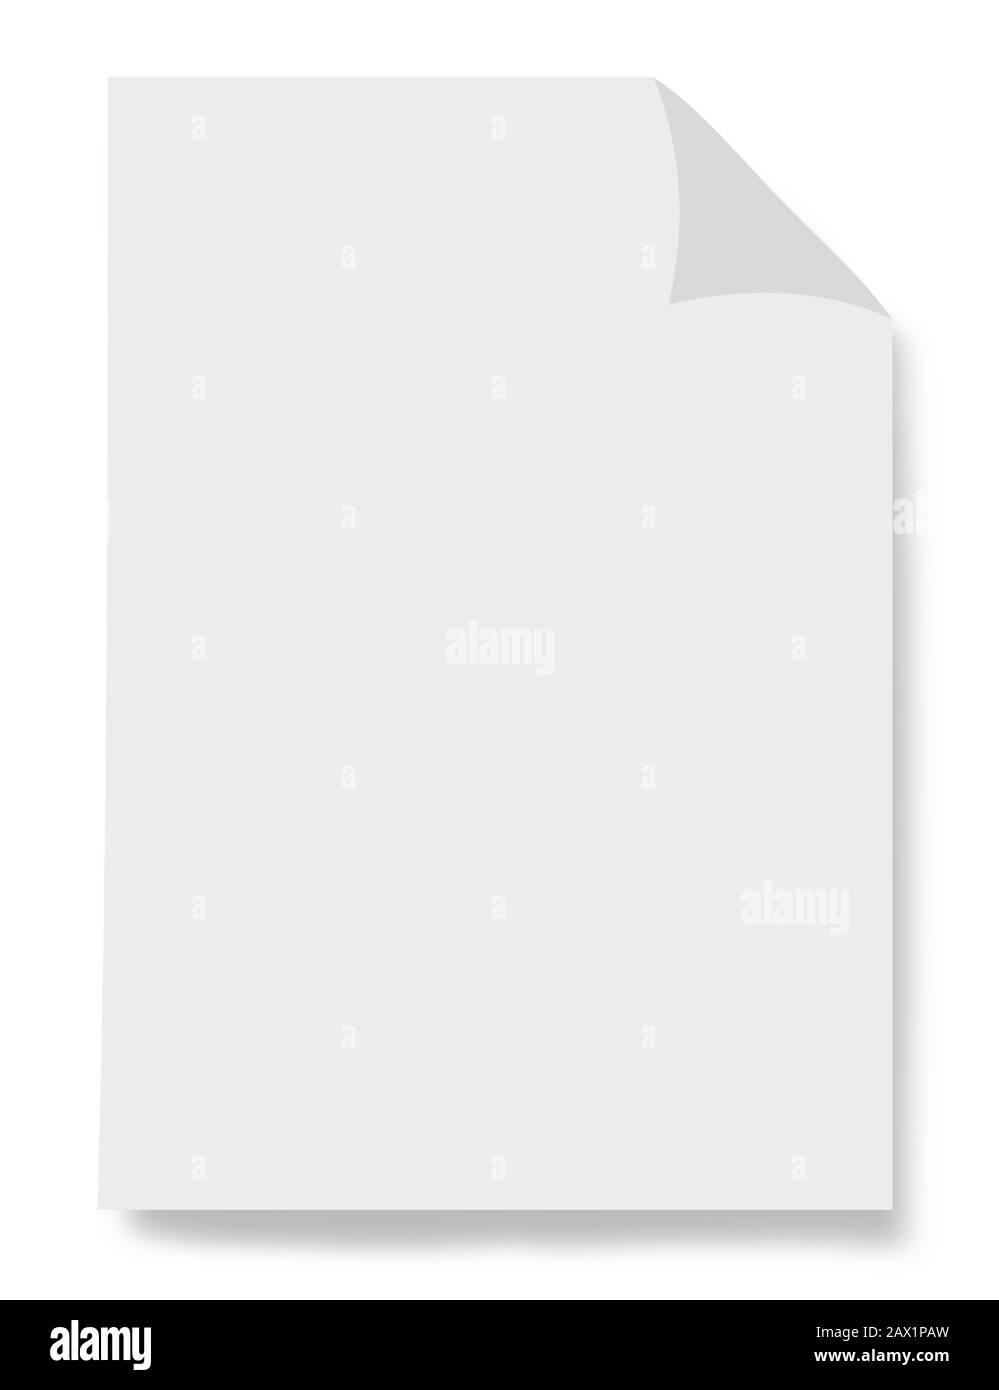 Foglio di carta bianco isolato su sfondo bianco Foto Stock